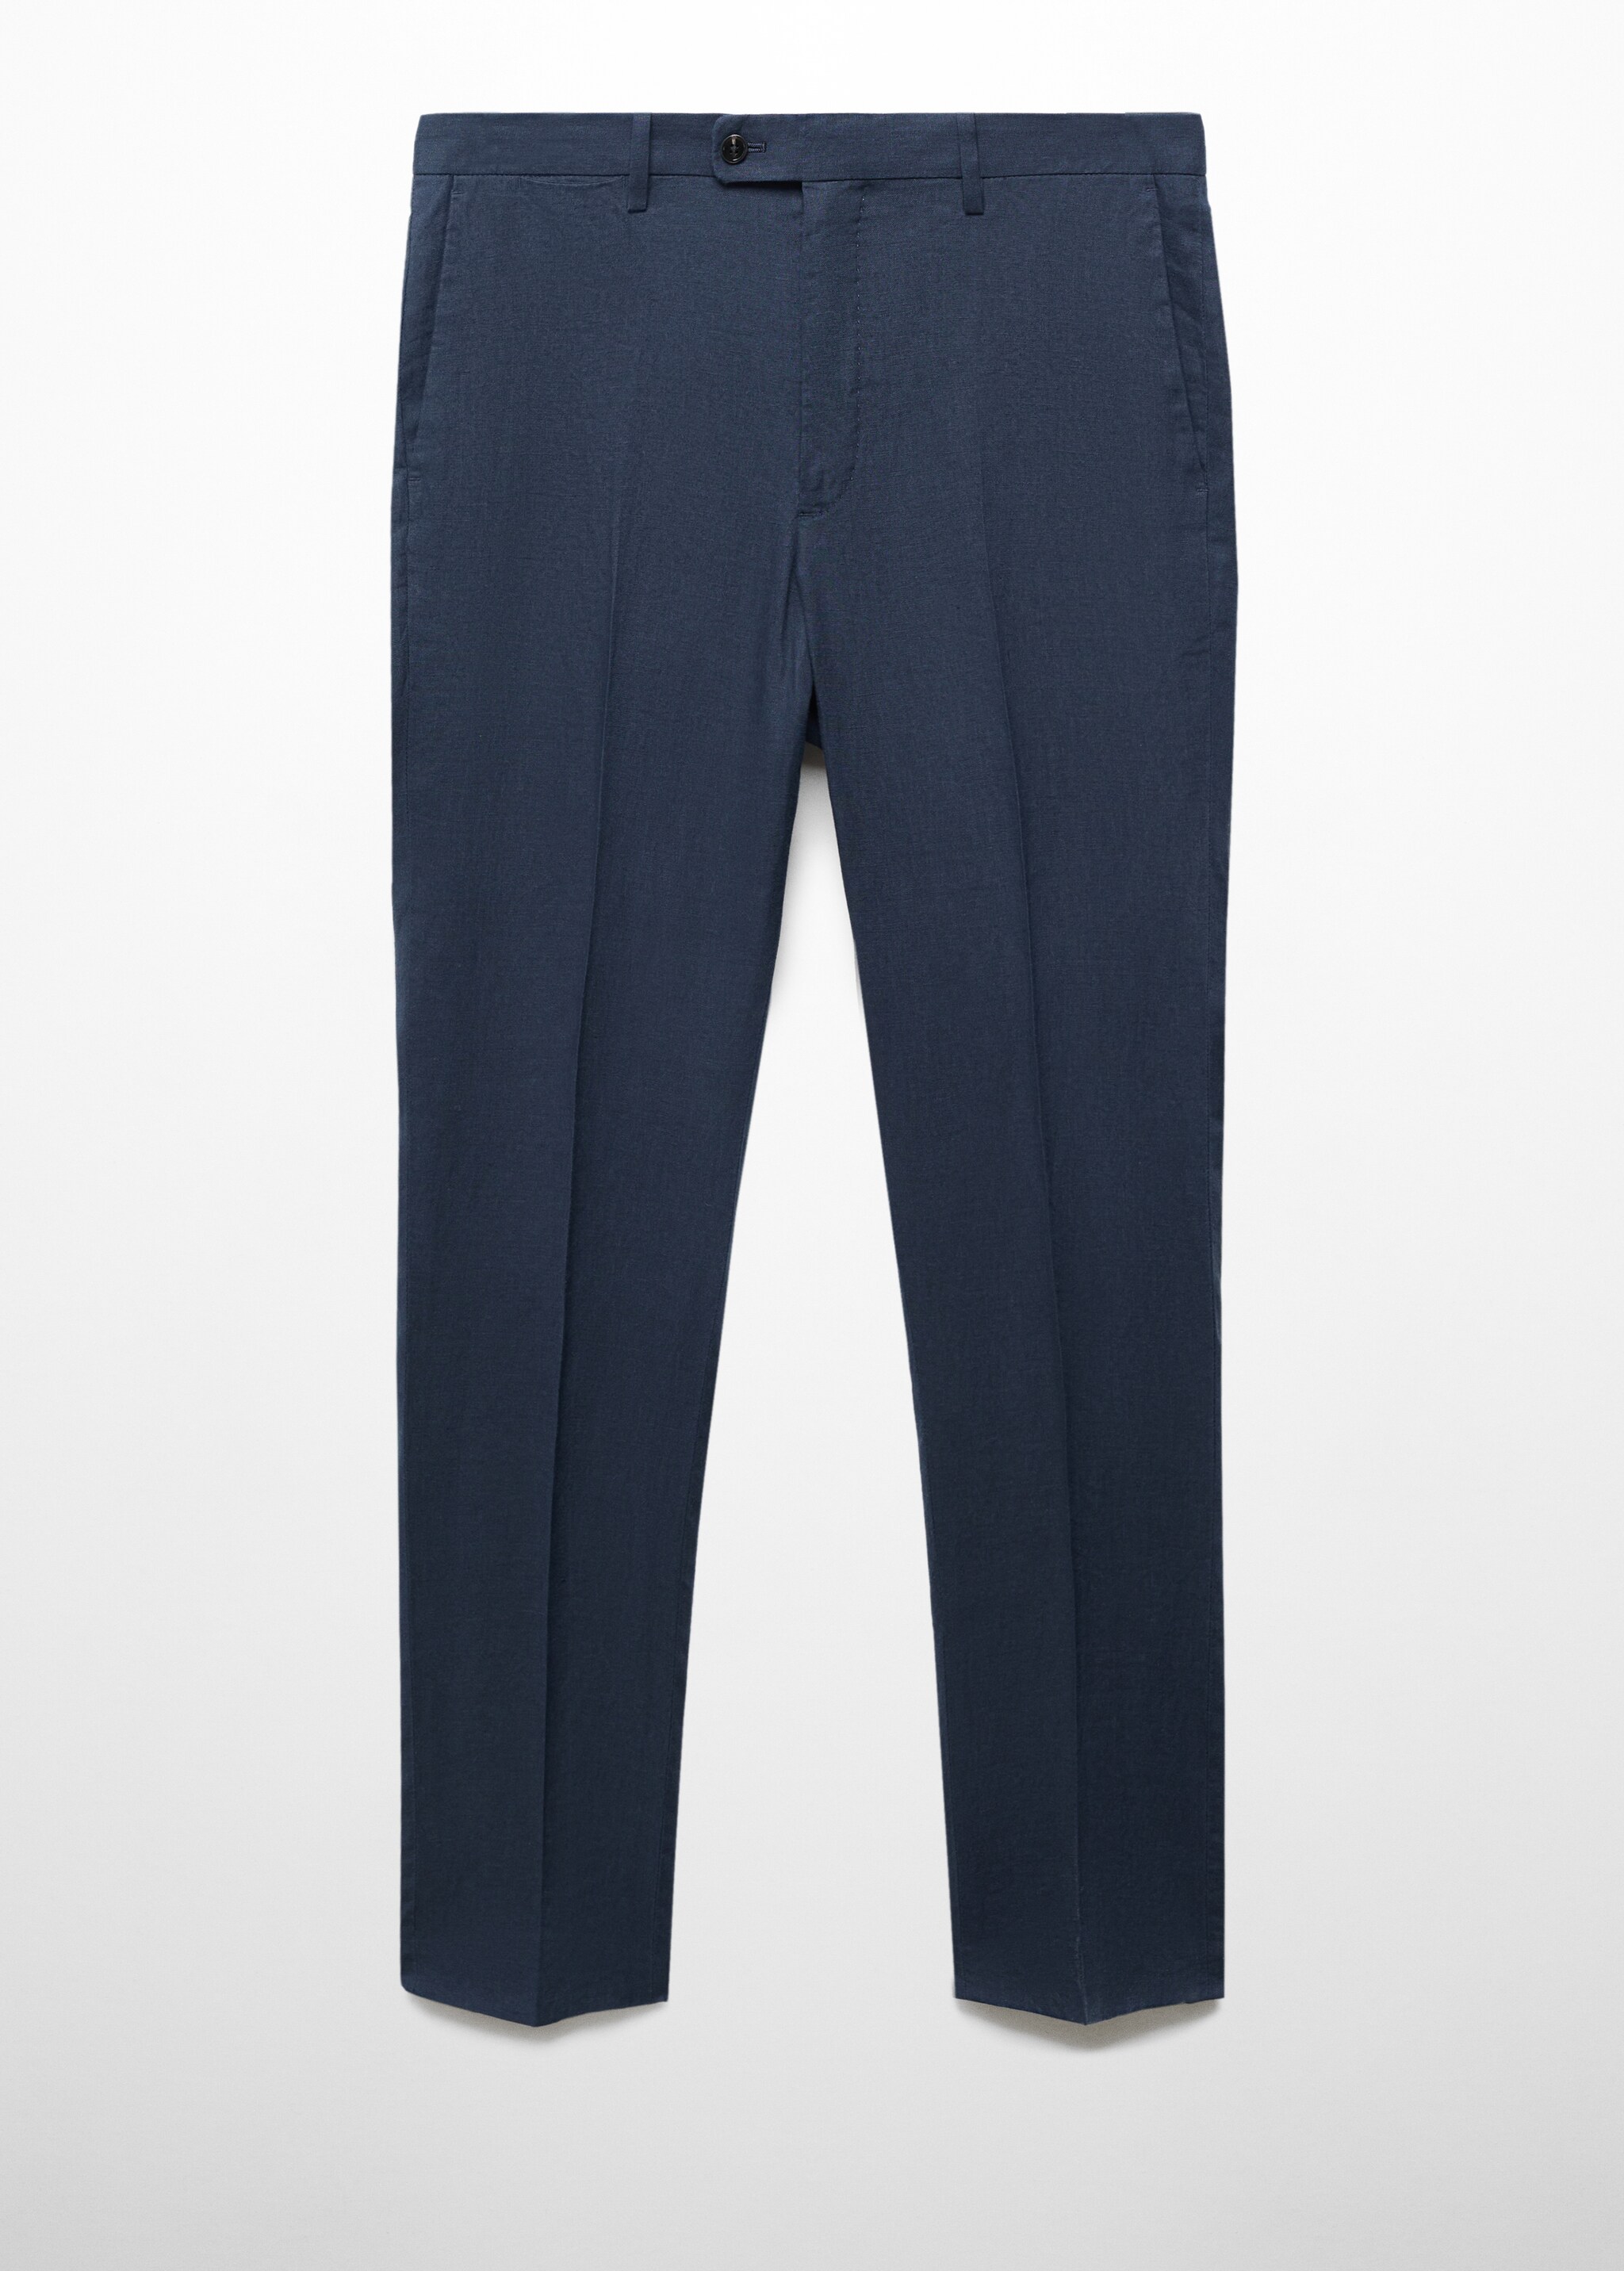 Slim fit suit pants 100% linen - Article without model